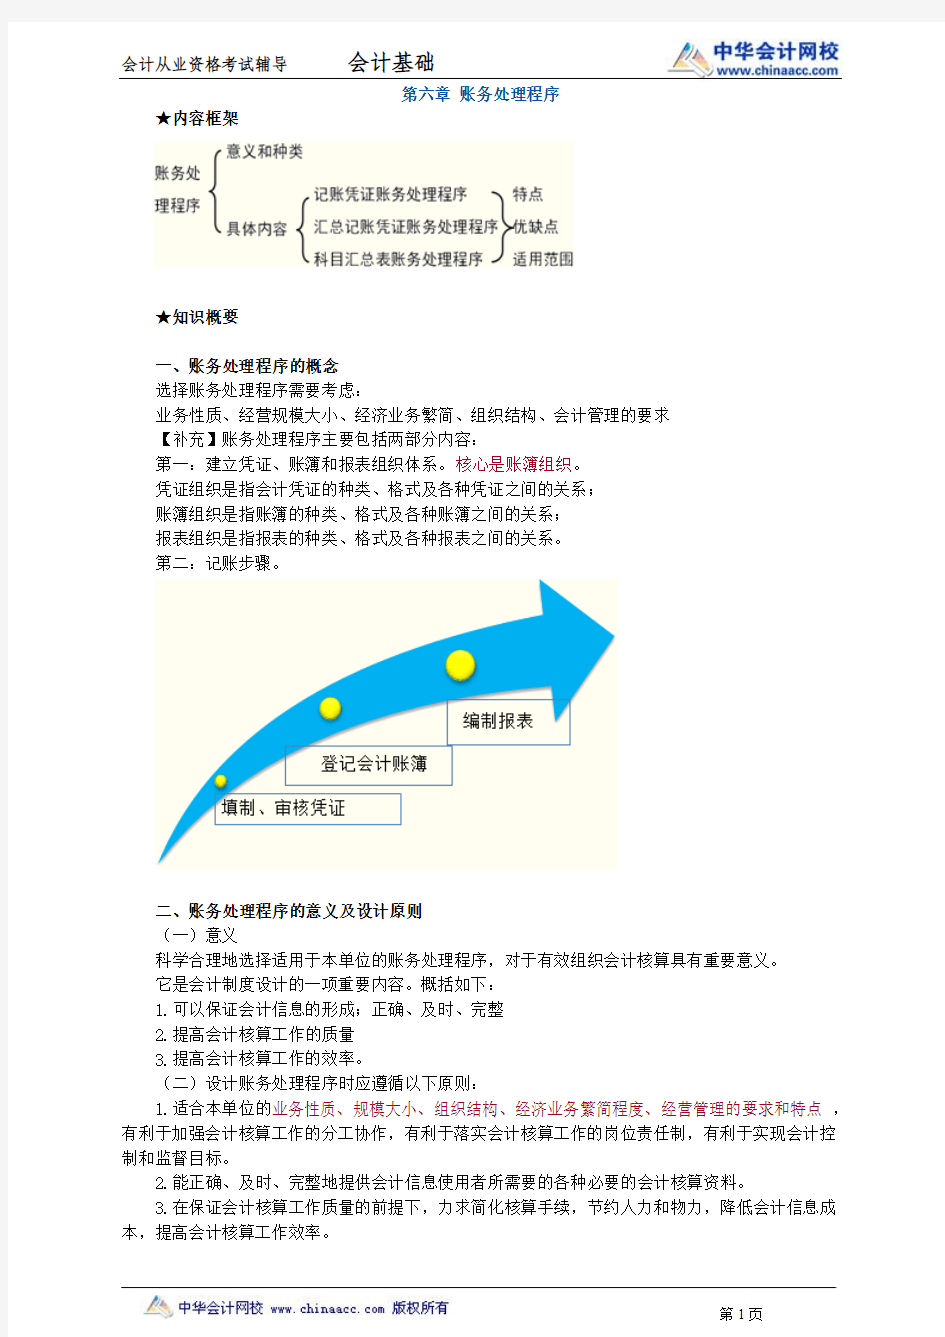 中华会计网校2013年北京会计从业考试《会计基础》习题班讲义第六章